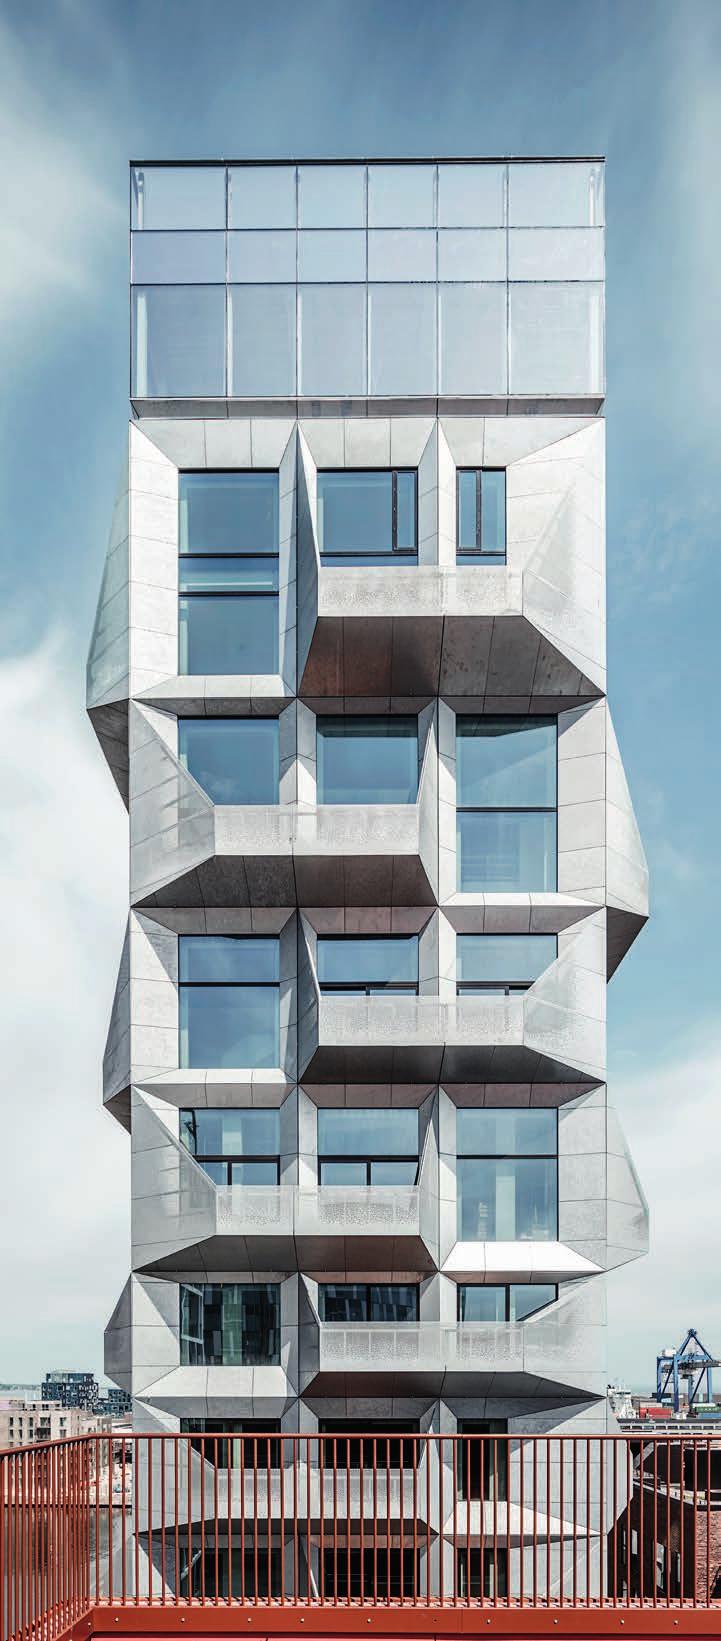 Kalk Koncept, som er en del av det danske konsulenthuset Kalk Ejendomme, har stått for innredning og design av flere leiligheter i prestisjebygget The Silo på Nordhavn i København.